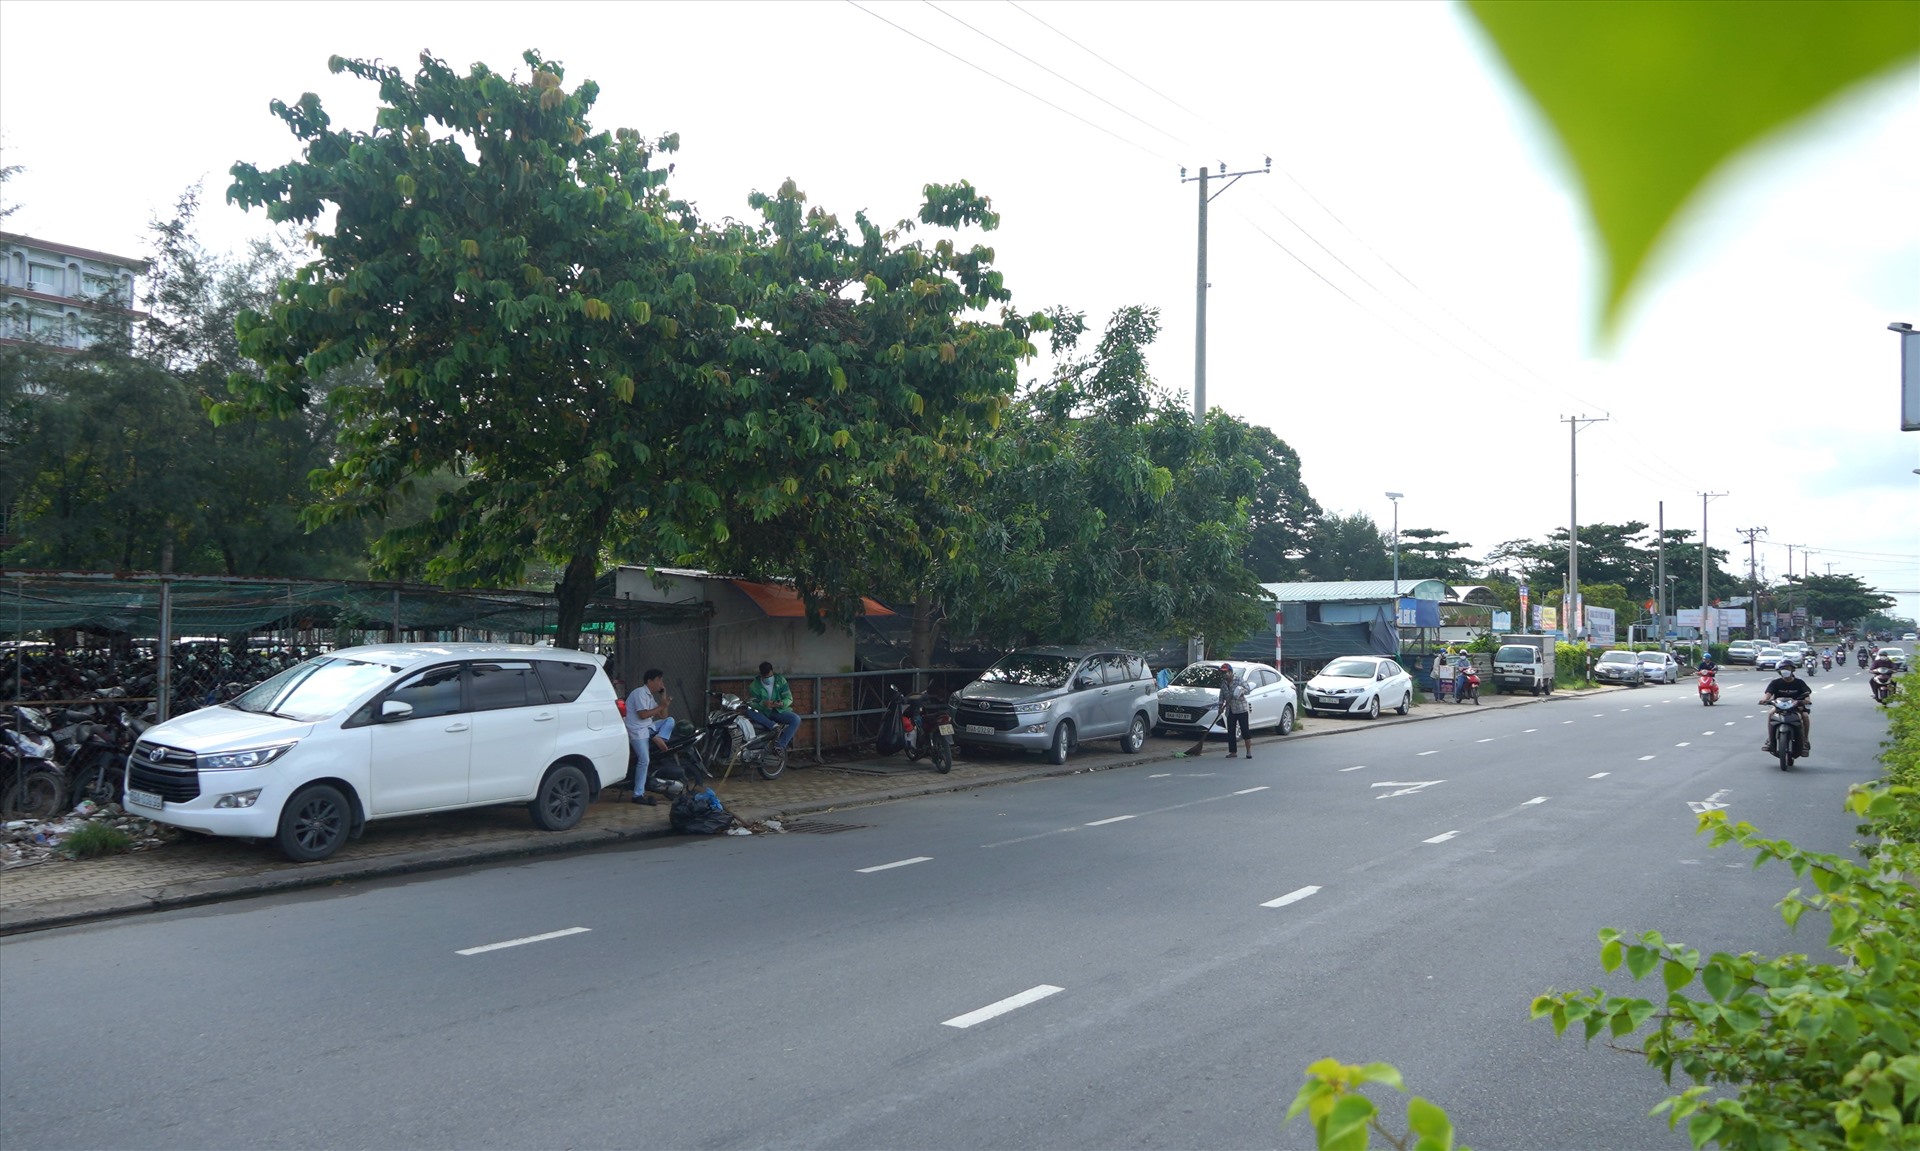 Ghi nhận của Lao Động ngày 1.8, trên đường Nguyễn Văn Linh (quận Ninh Kiều), đoạn trước cổng Bệnh viện Đa khoa Trung ương Cần Thơ, nhiều ô tô nối đuôi nhau đậu chật kín cả một đoạn vỉa hè dài.